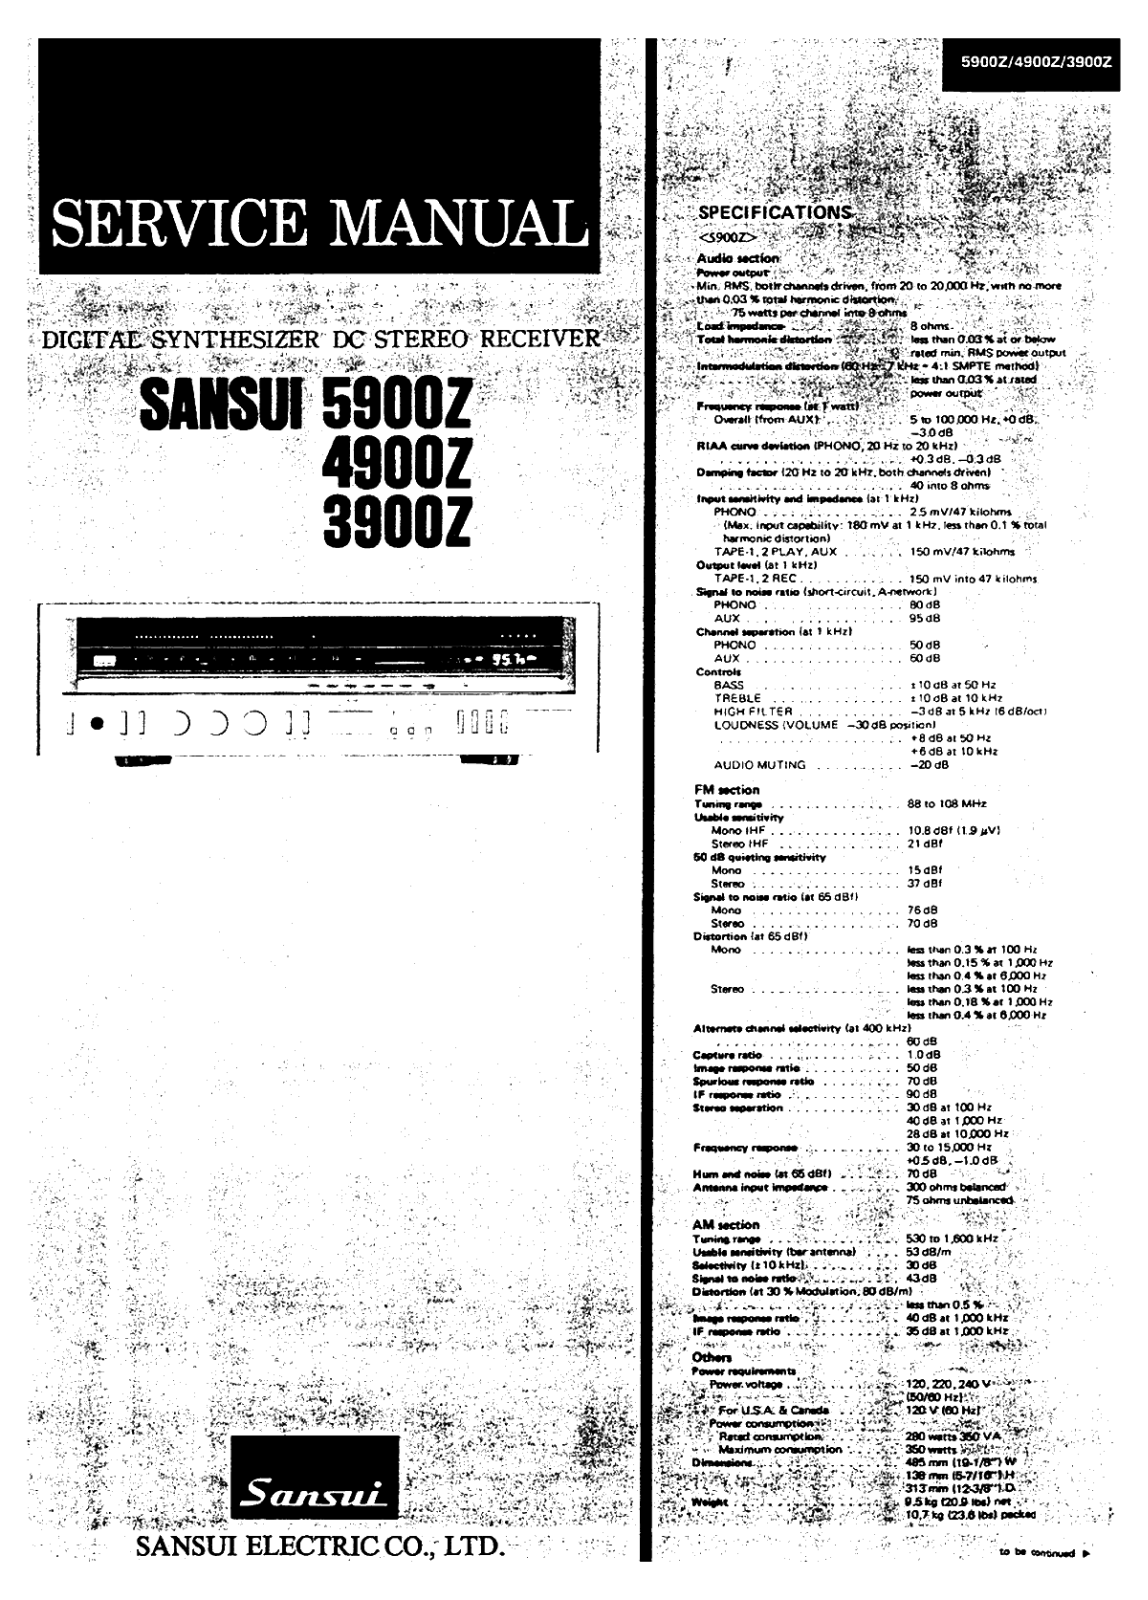 Sansui 5900-Z, 3900-Z, 4900-Z Service manual